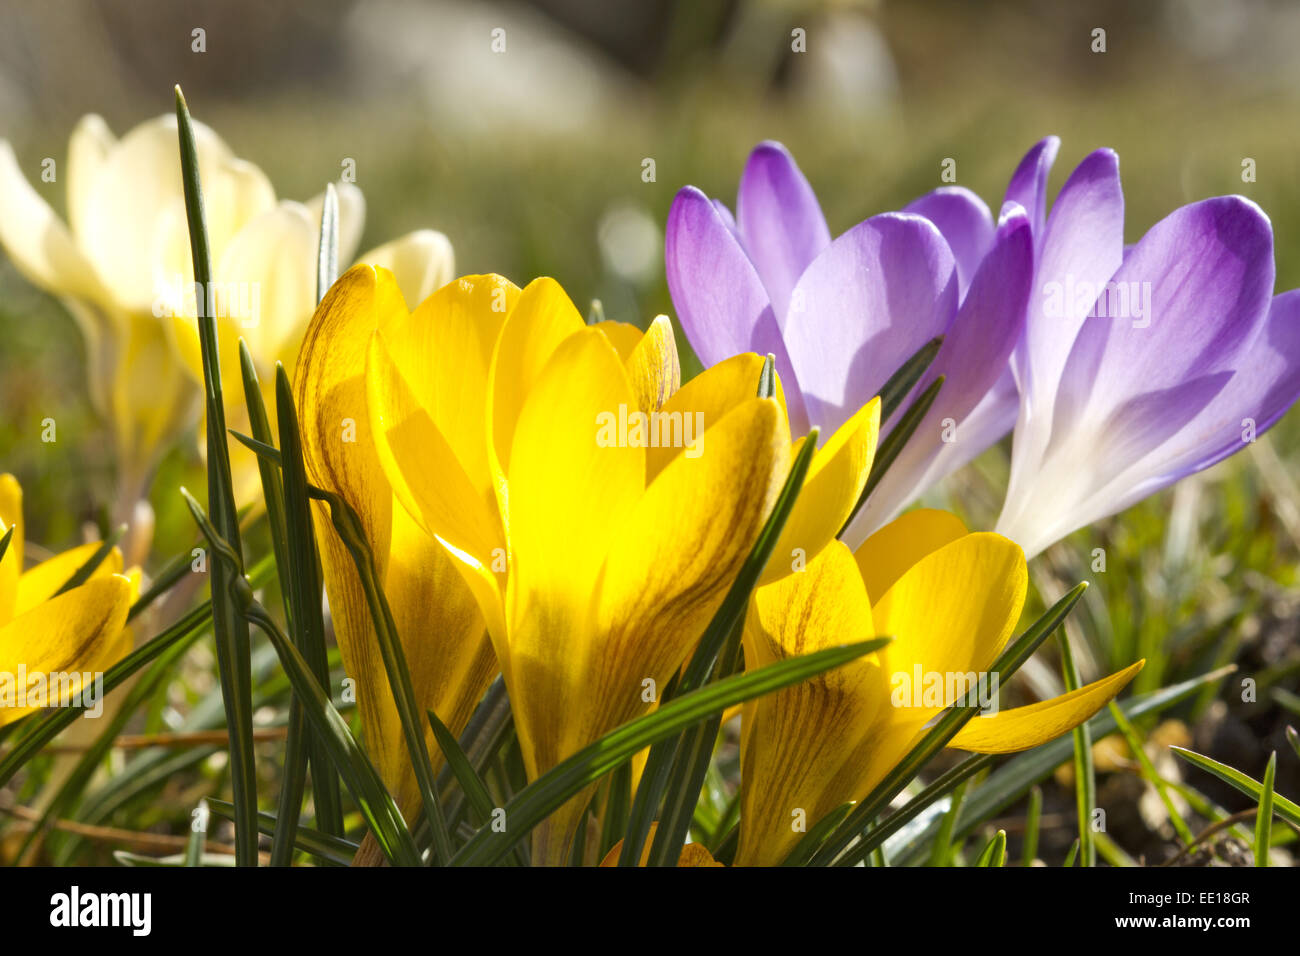 Frühlingsboten, blühende Krokusse, Crocus Stock Photo